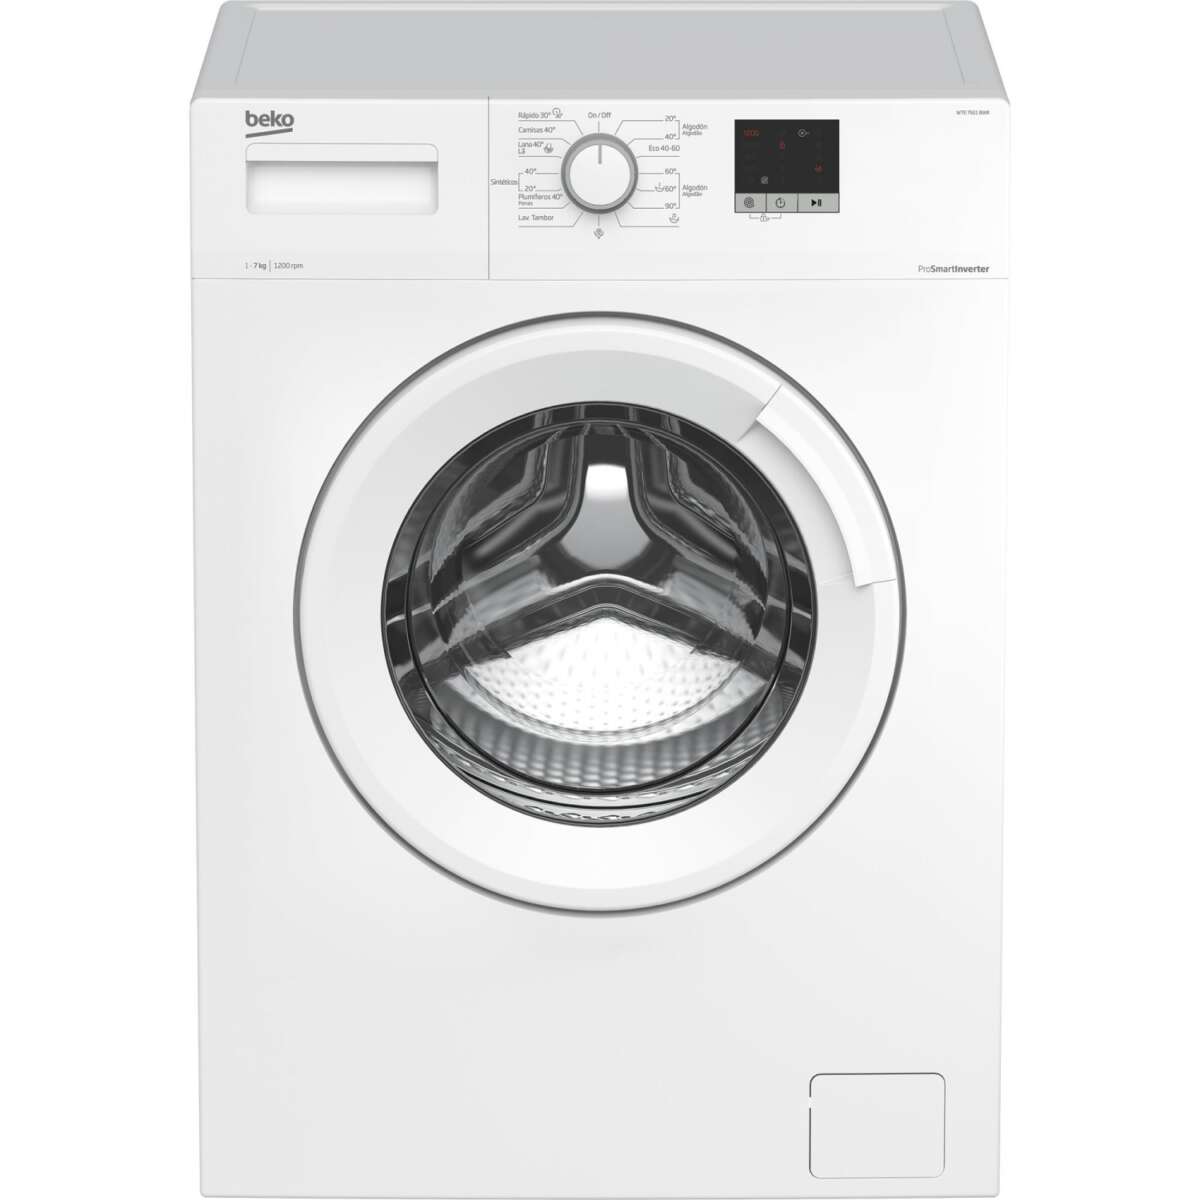 Las lavadoras de Carrefour: Beko de 7 kg de Carrefour